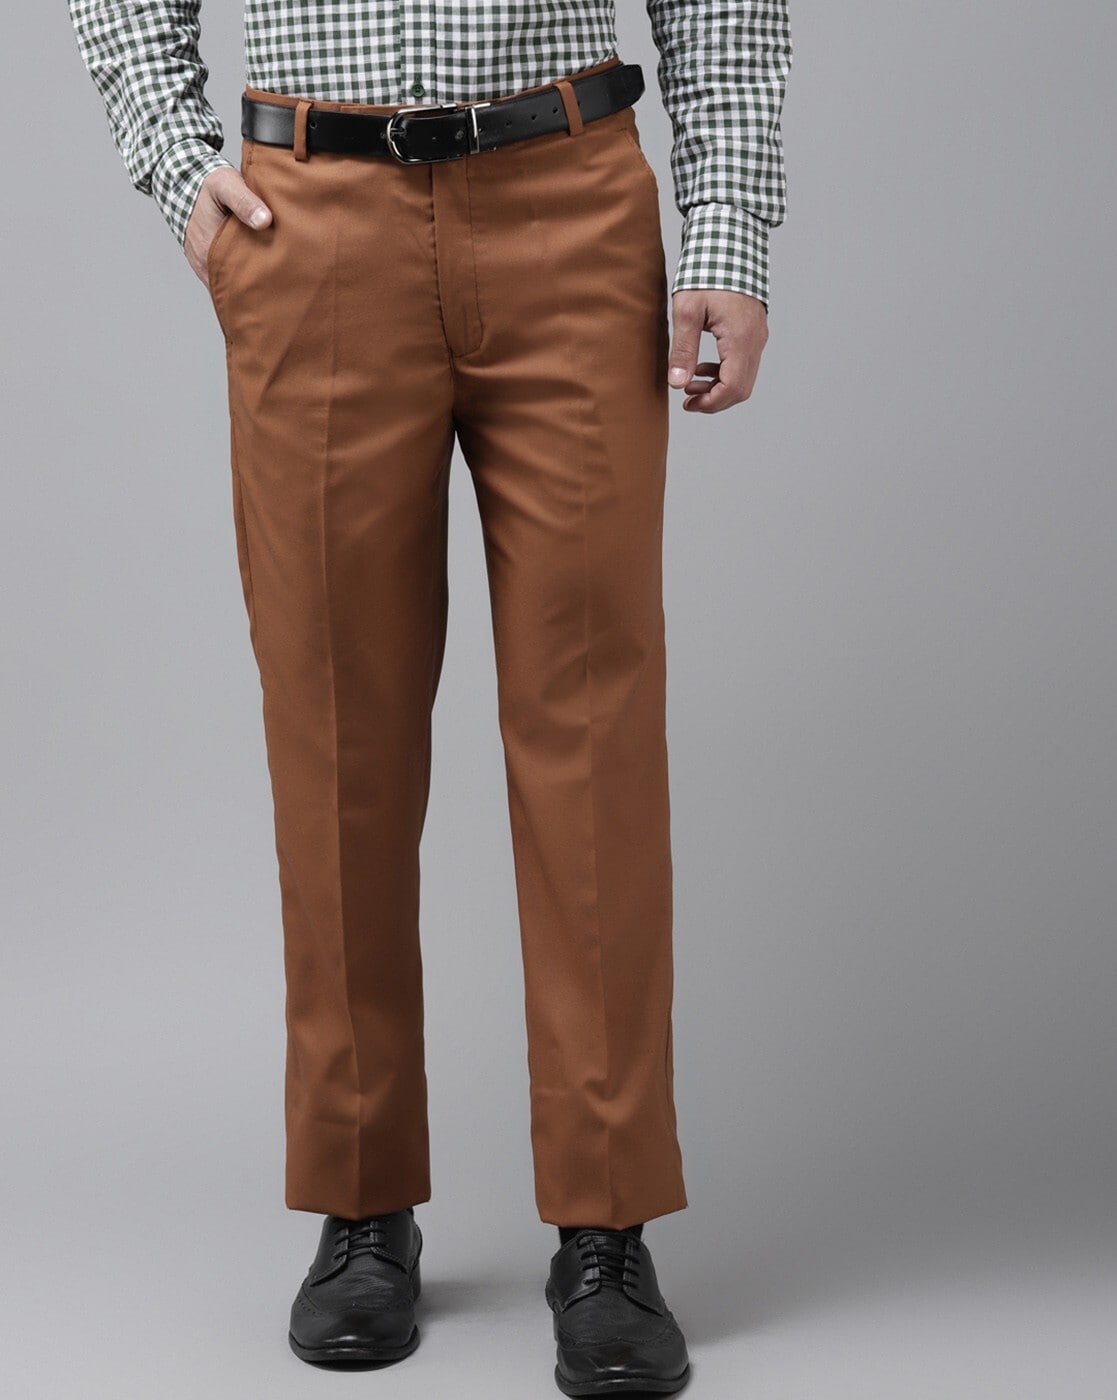 Reigate Stripe Light Brown Pants